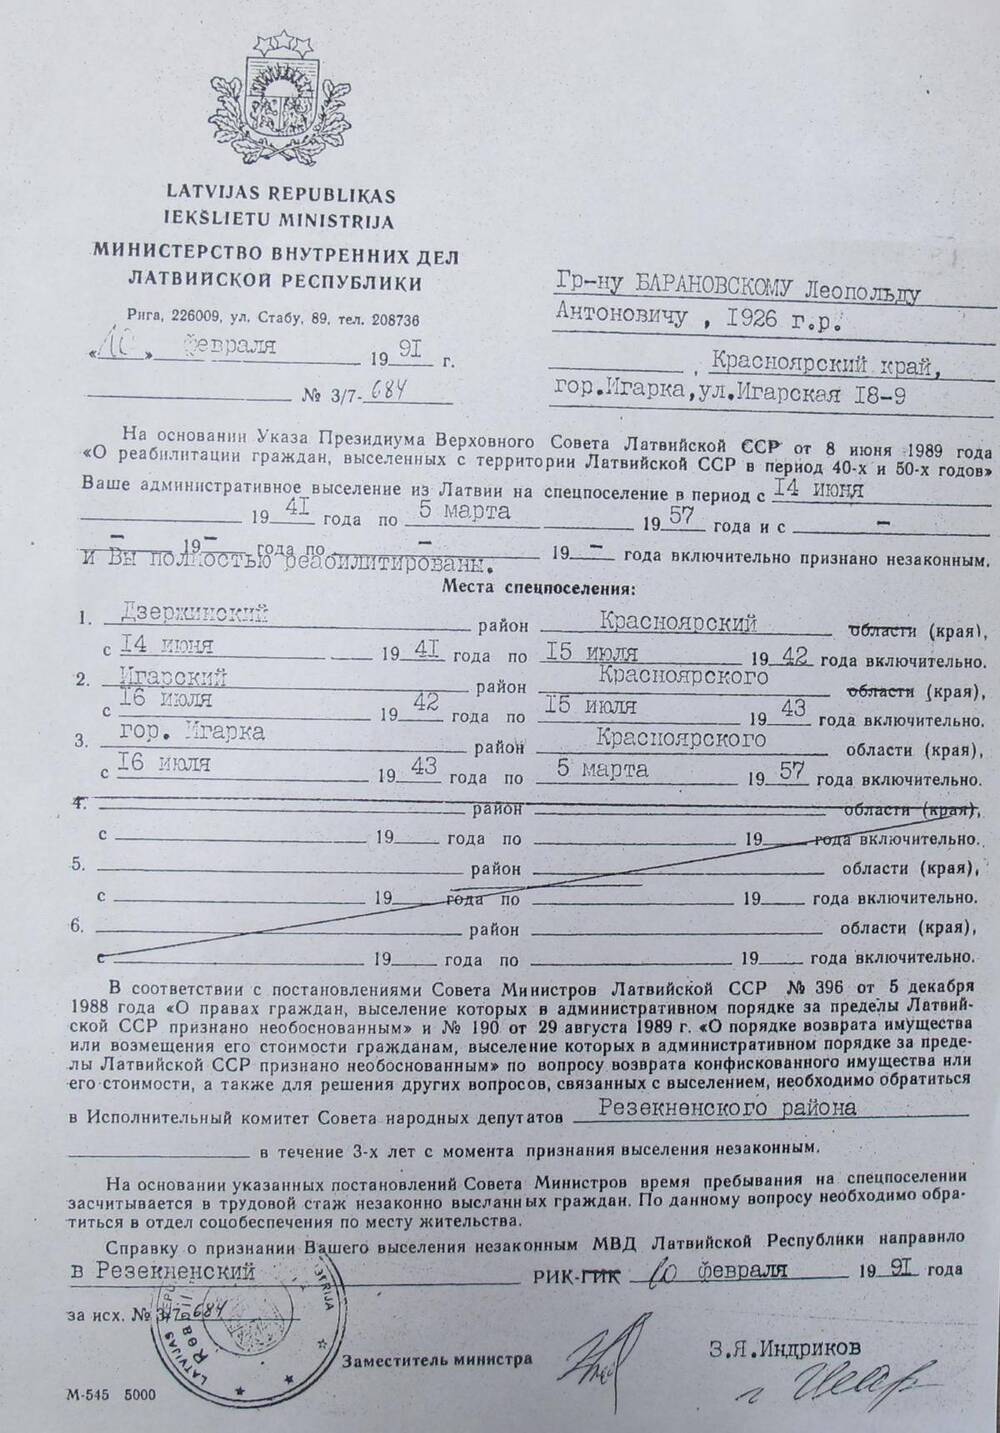 Справка Министерства внутренних дел Латвийской республики № 3/7-684 от 10.02.1991 г. о реабилитации Барановского Леопольда Антоновича.